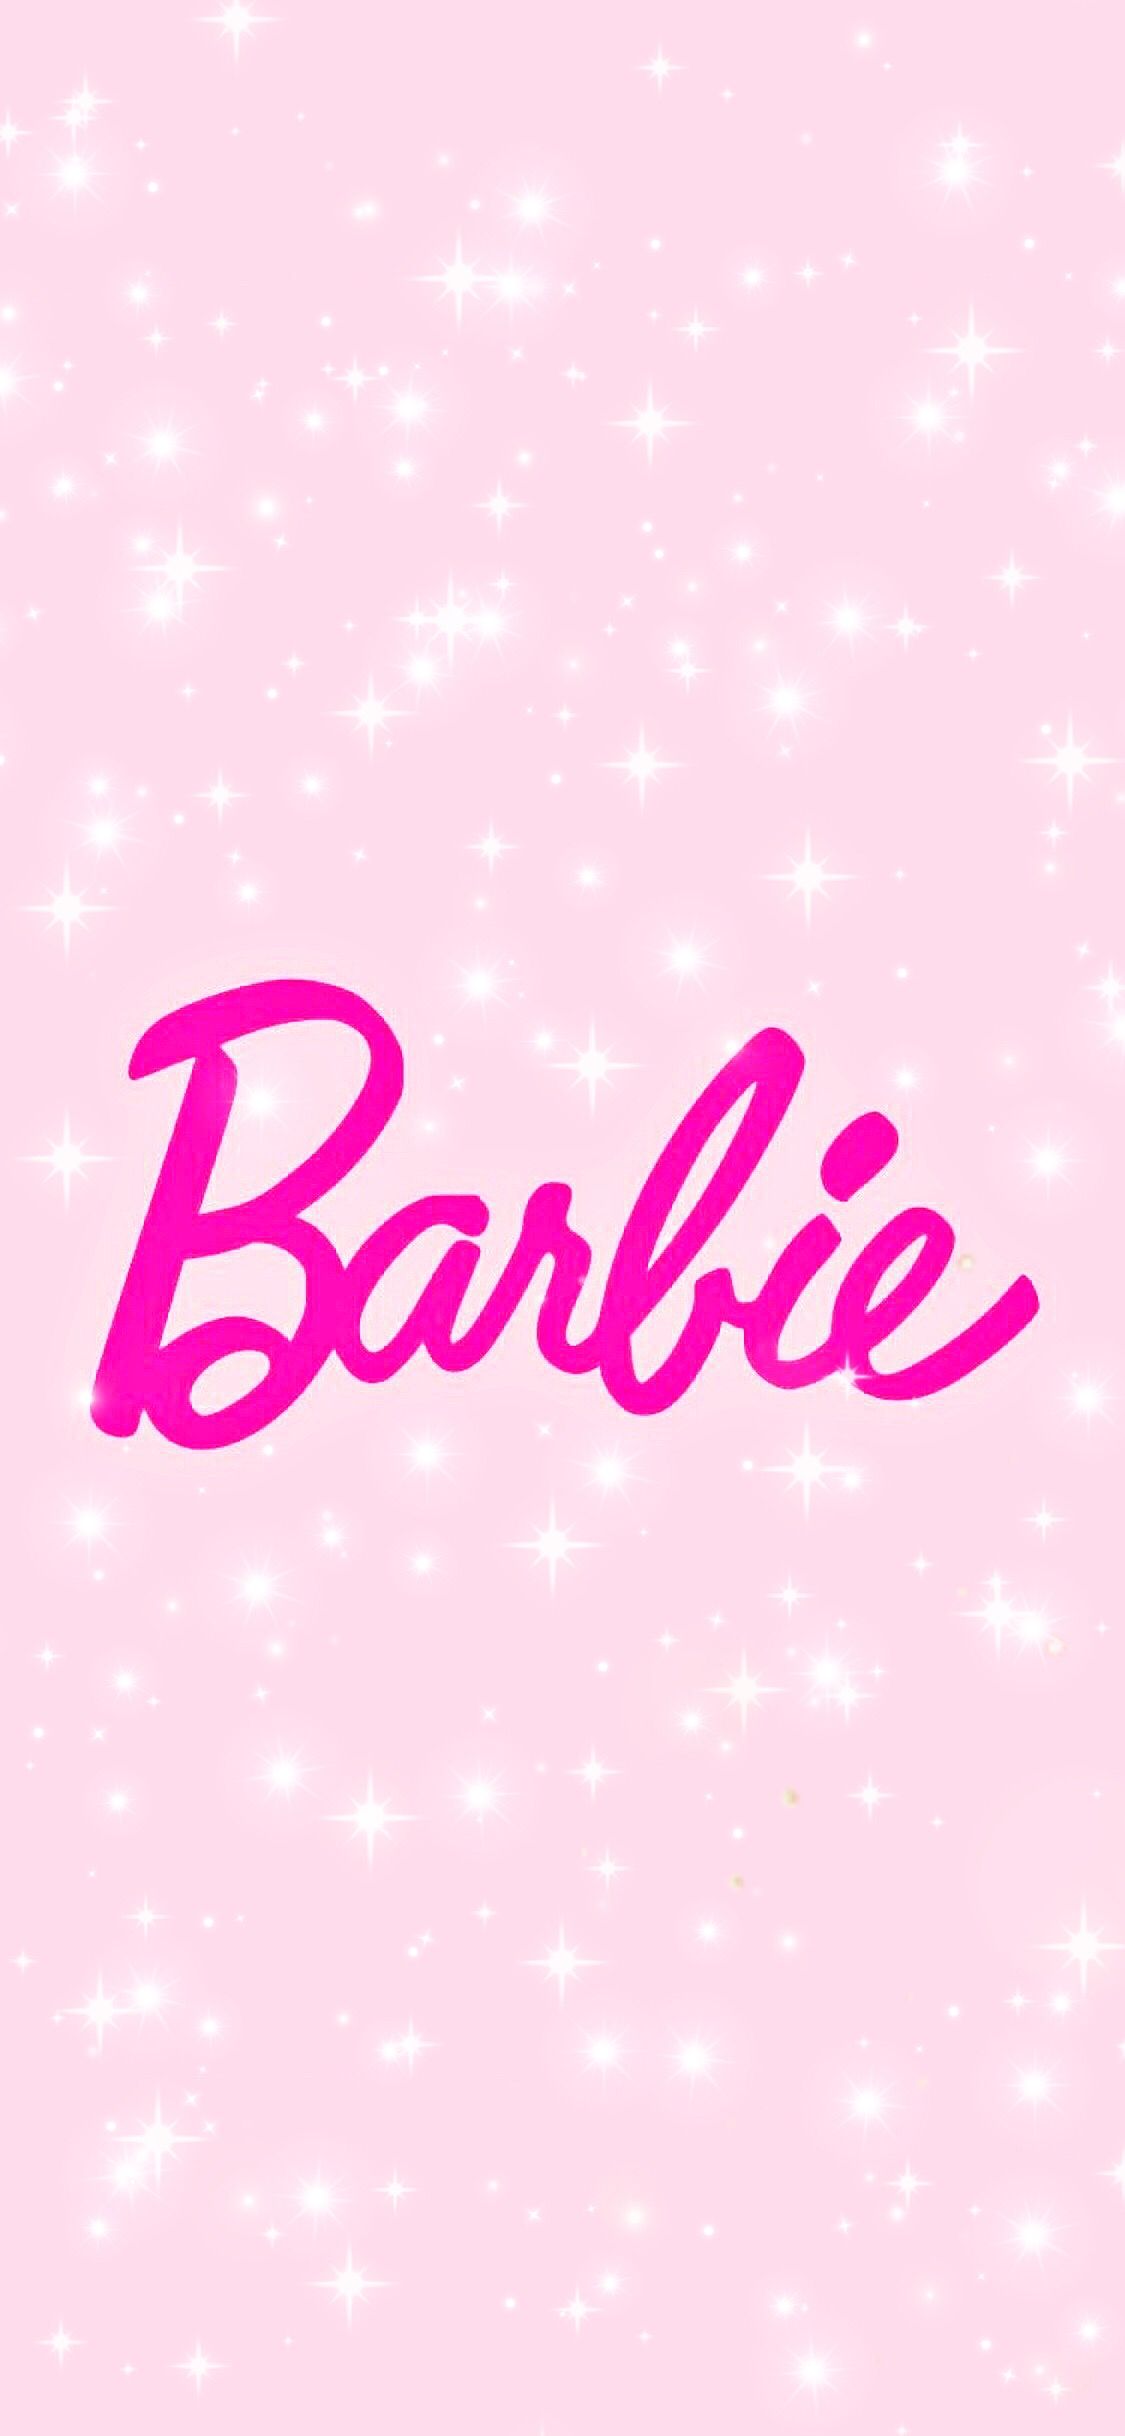 Barbie. Fondos de disney para teléfonos, Fondos para iphone, Temas para celular rosa